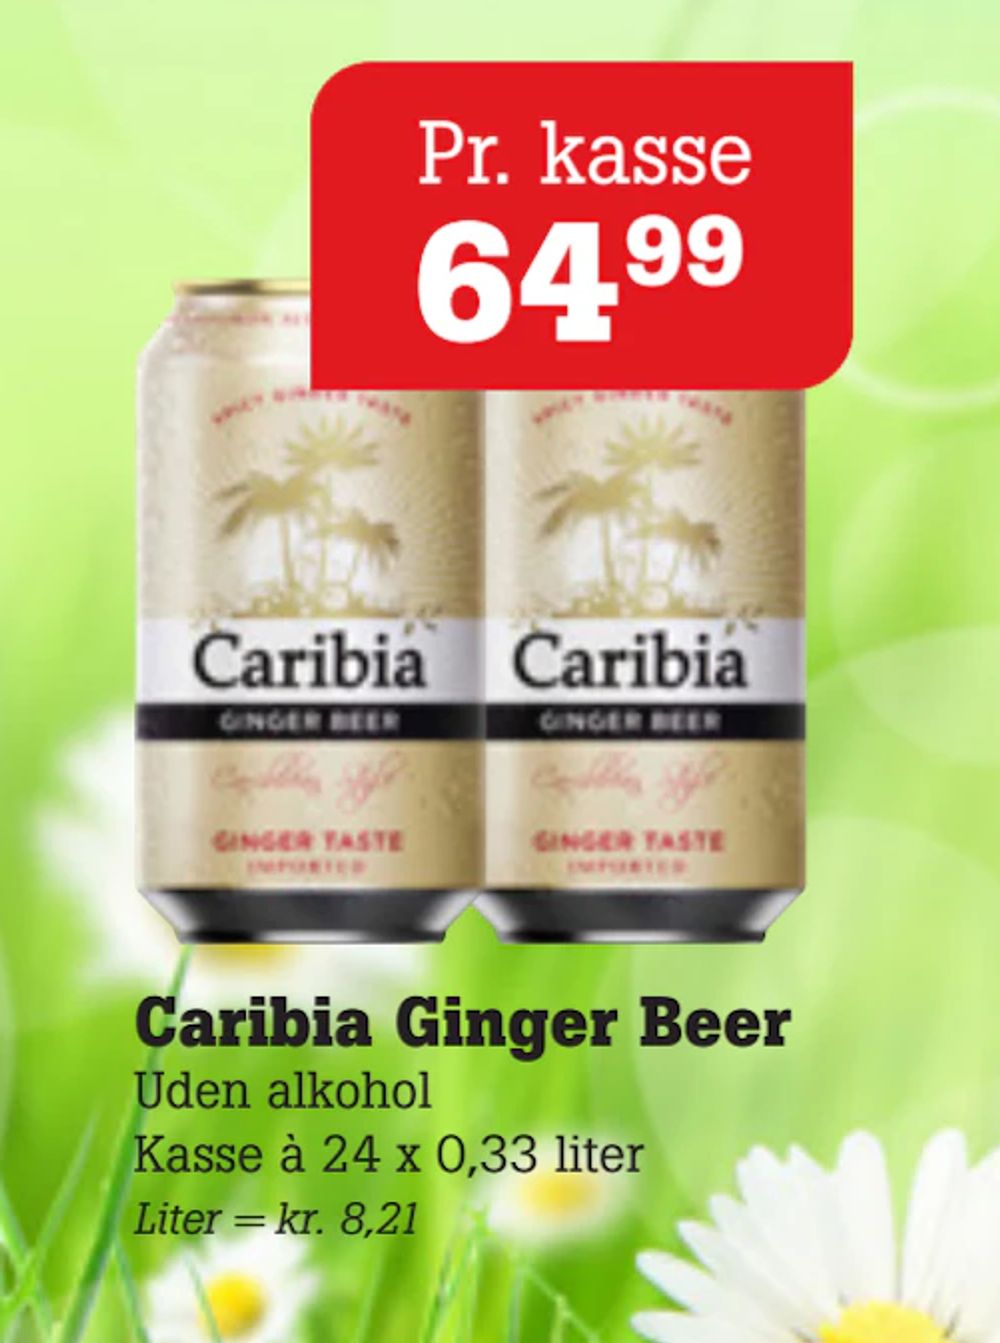 Tilbud på Caribia Ginger Beer fra Poetzsch Padborg til 64,99 kr.